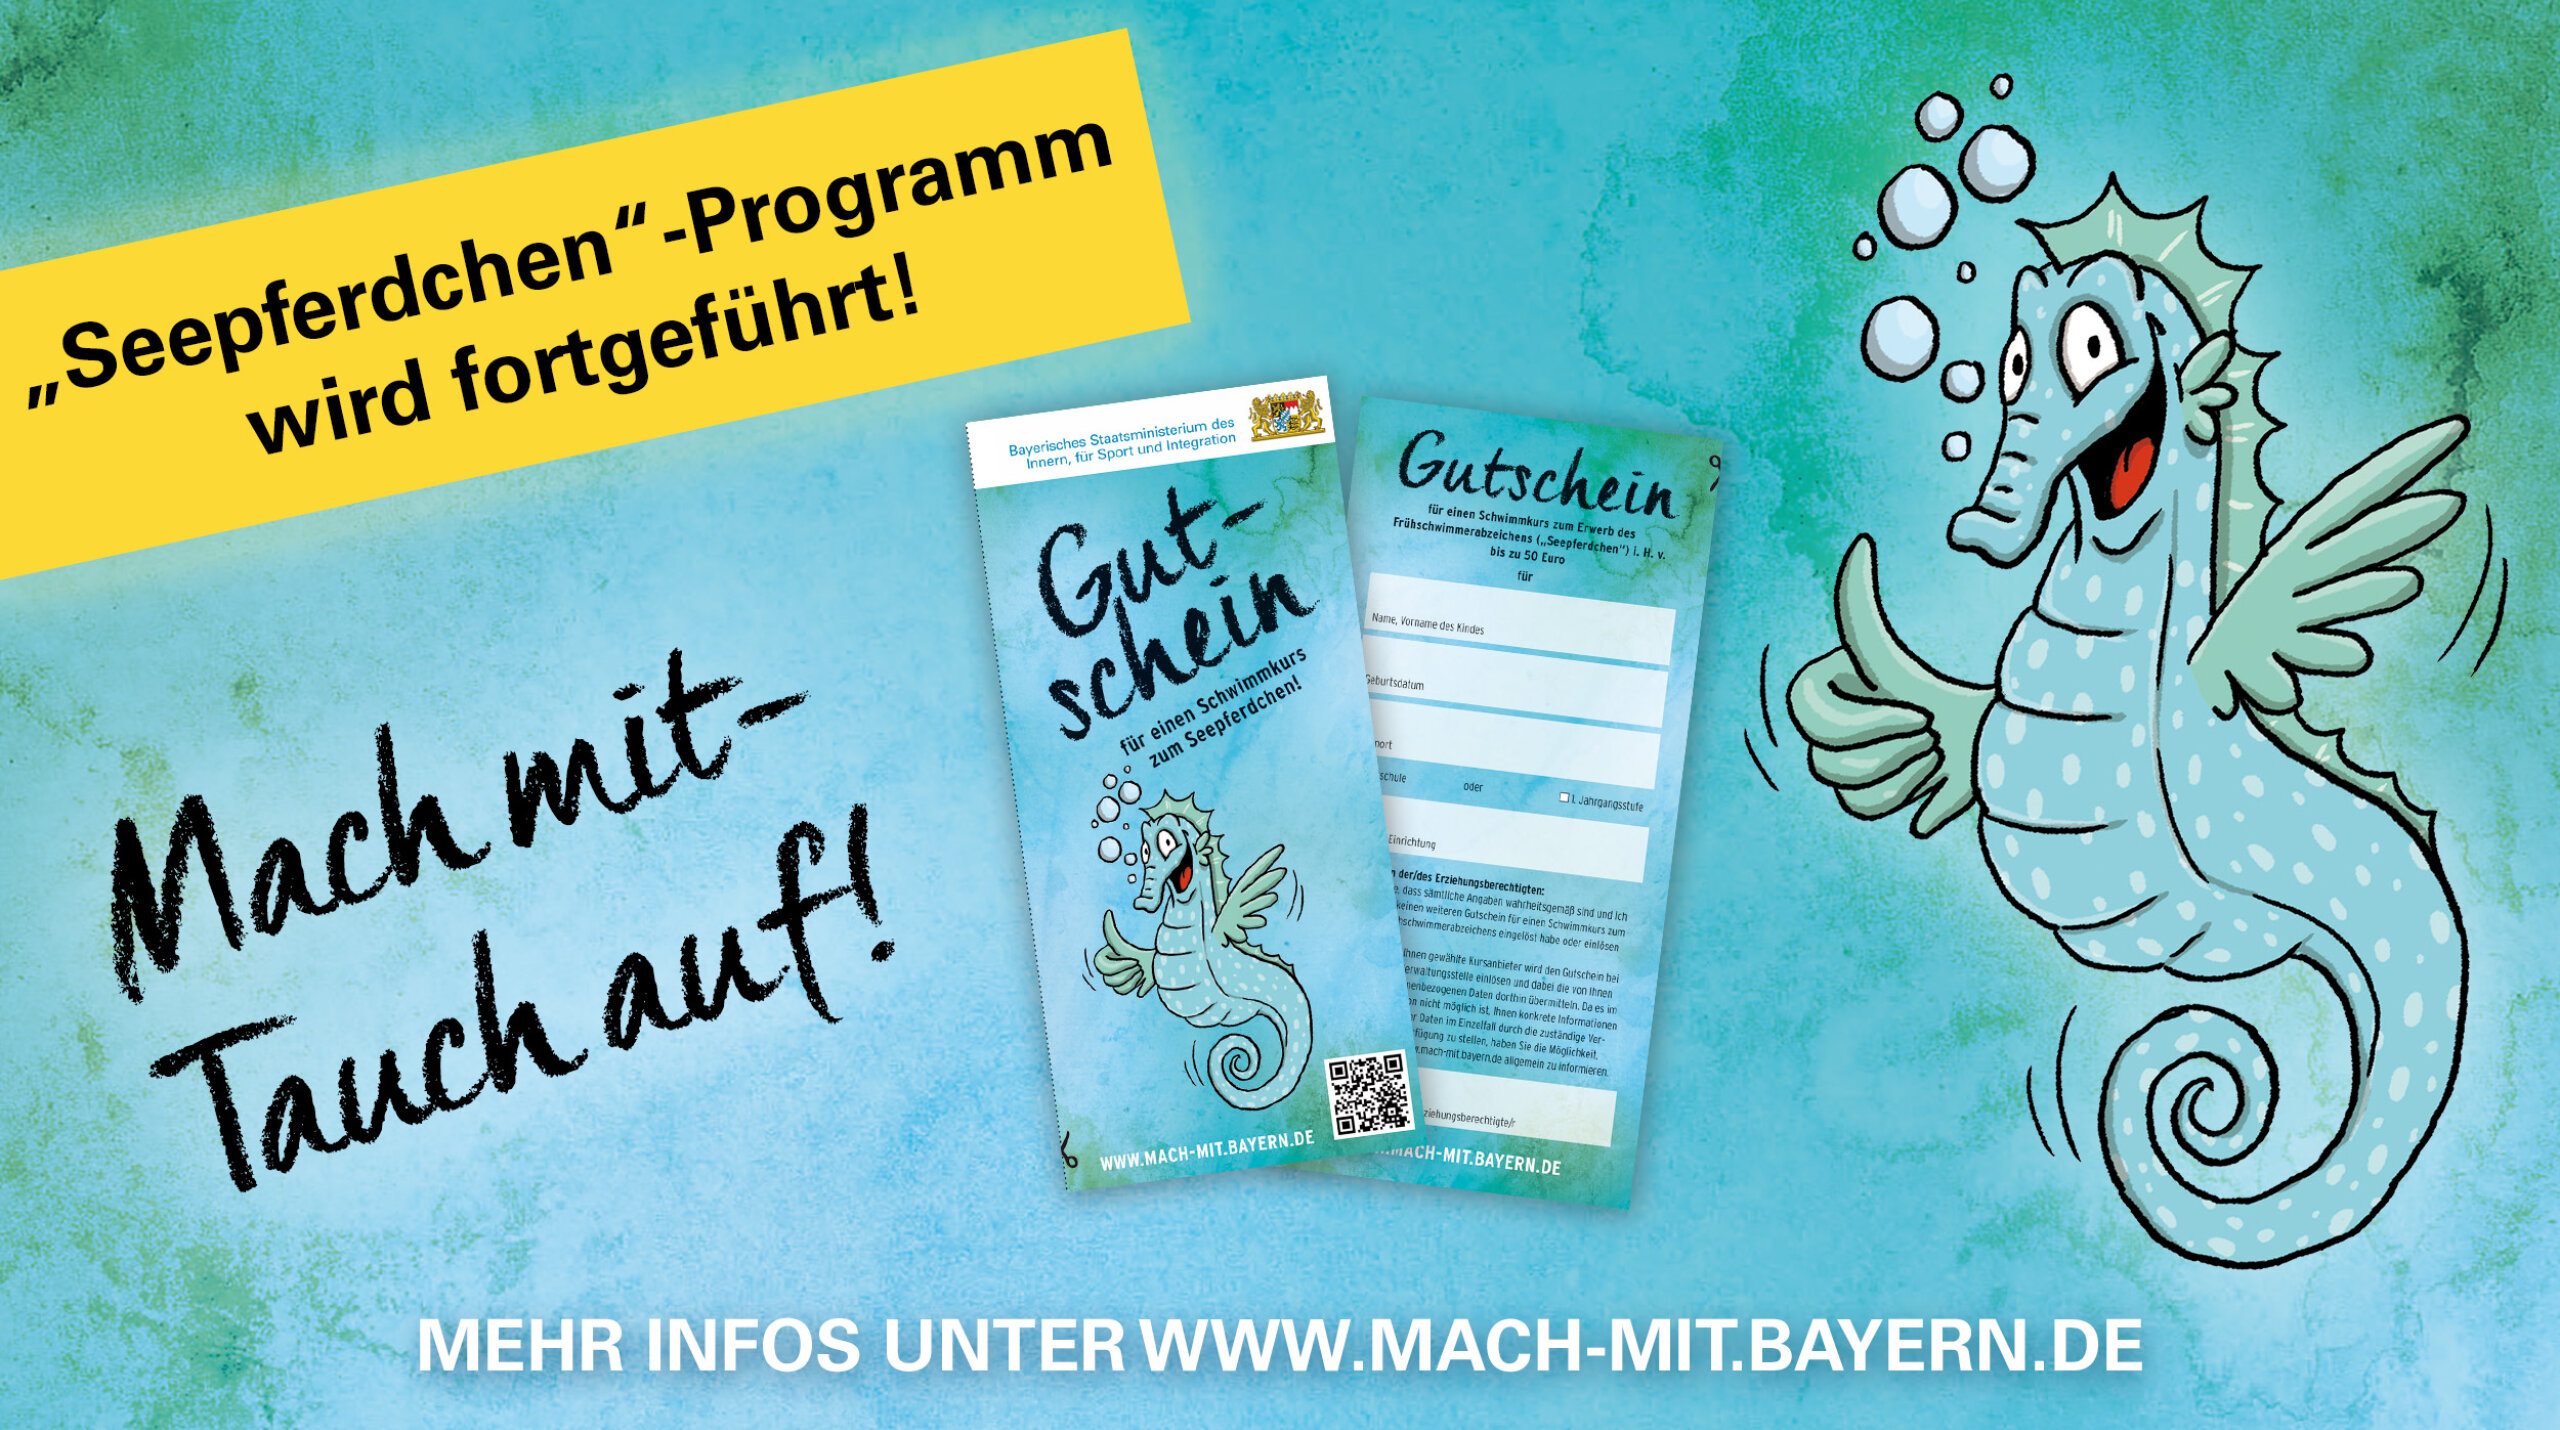 Grafik: "Seepferdchen"-Programm wird fortgeführt! Mach mit - Tauch auf! Mehr Infos unter www.mach-mit.bayern.de